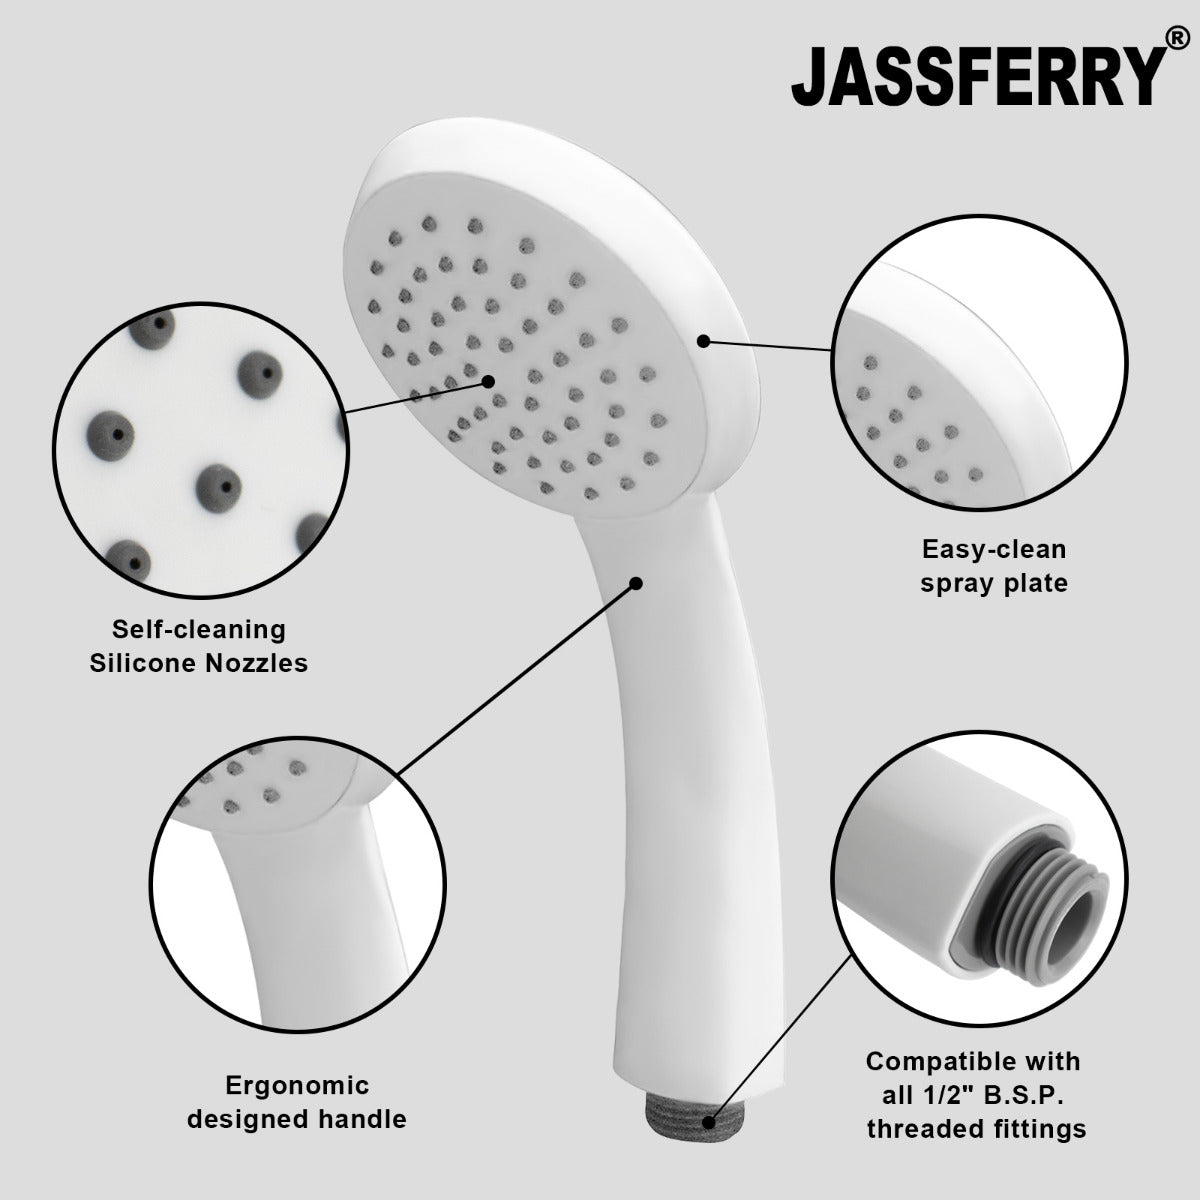 JassferryJASSFERRY White Single Function Handheld Shower Head Replacement Bathroom HandsetShower Heads